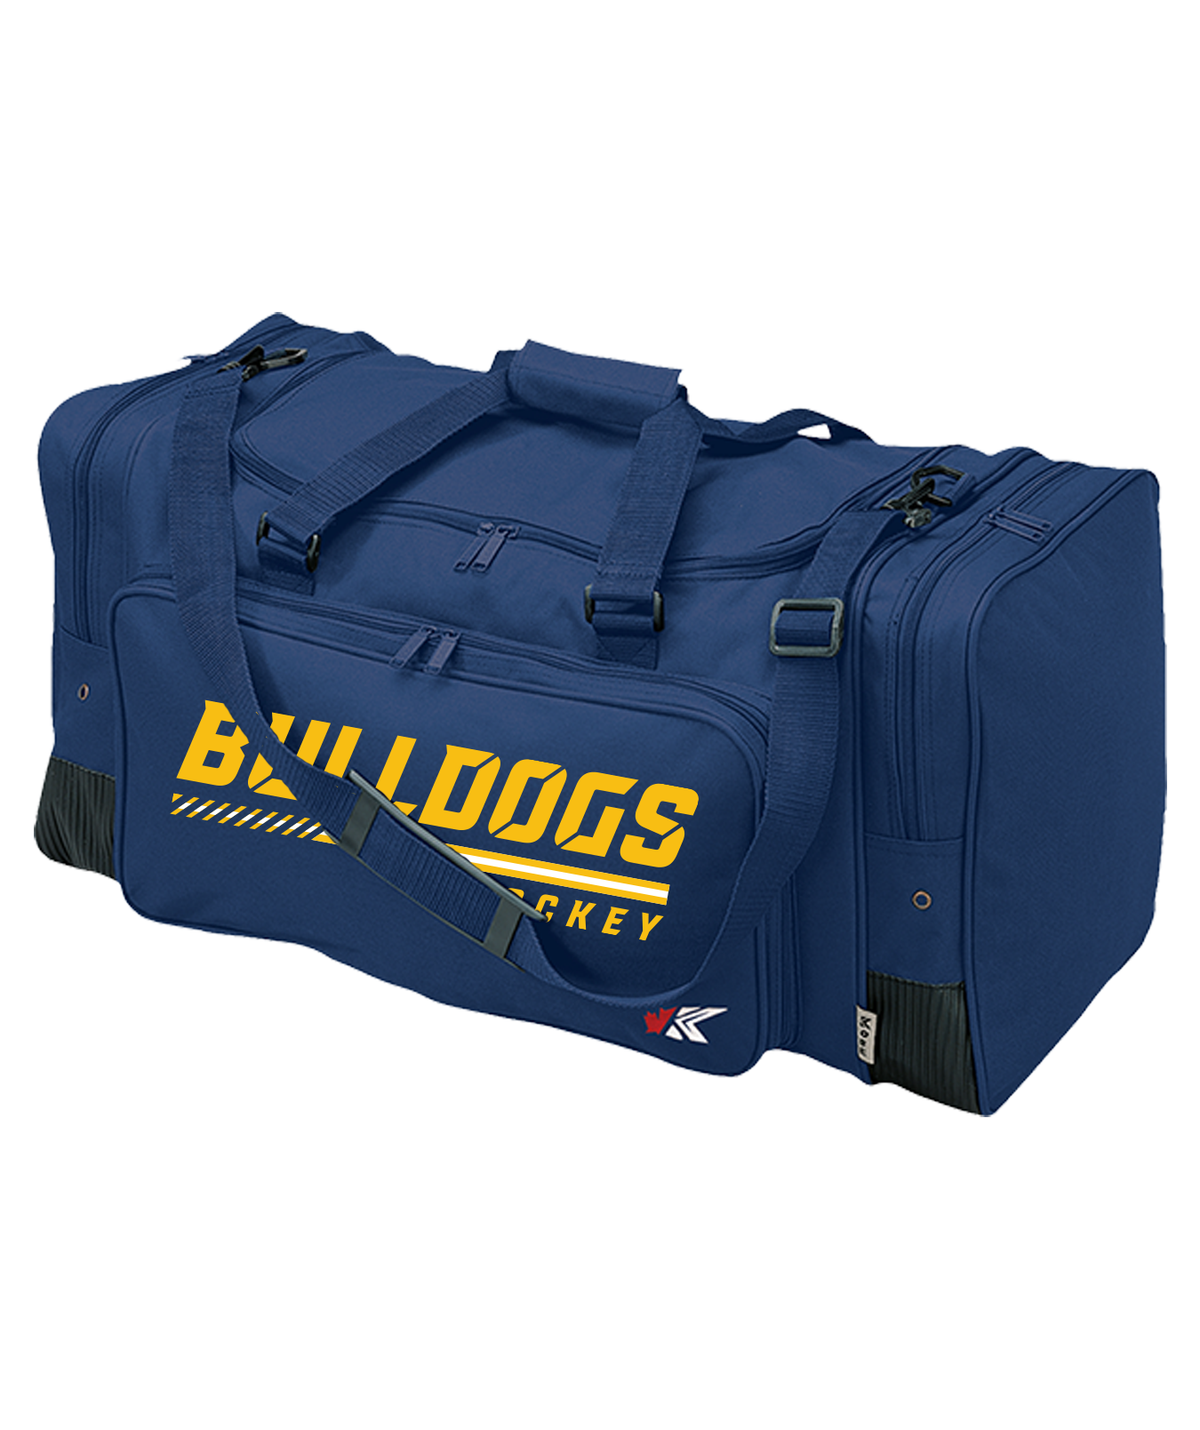 Bulldogs Coaches Bag